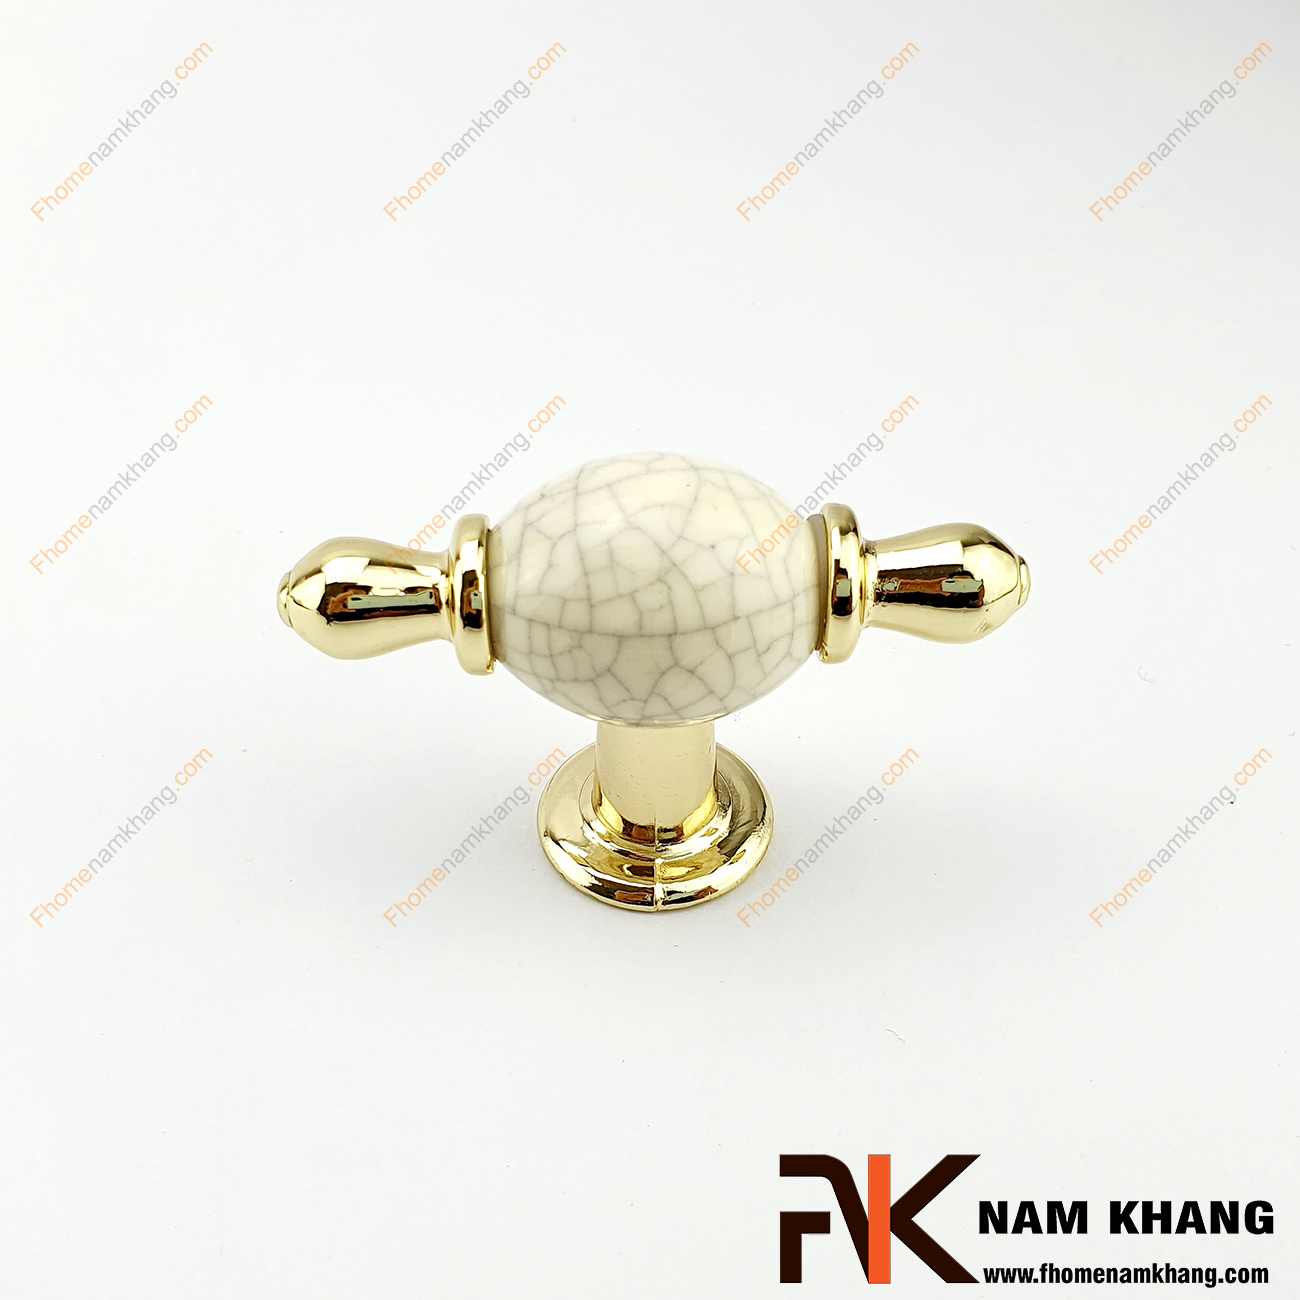 Núm cửa tủ dạng tròn sứ vân viền vàng NK329-VC có thiết kế khá đơn giản từ hợp kim mạ vàng bọc quanh sứ trắng bóng cao cấp. Khá đơn giản nhưng lại toát lên vẻ ngoài tinh tế và rất sang trọng .